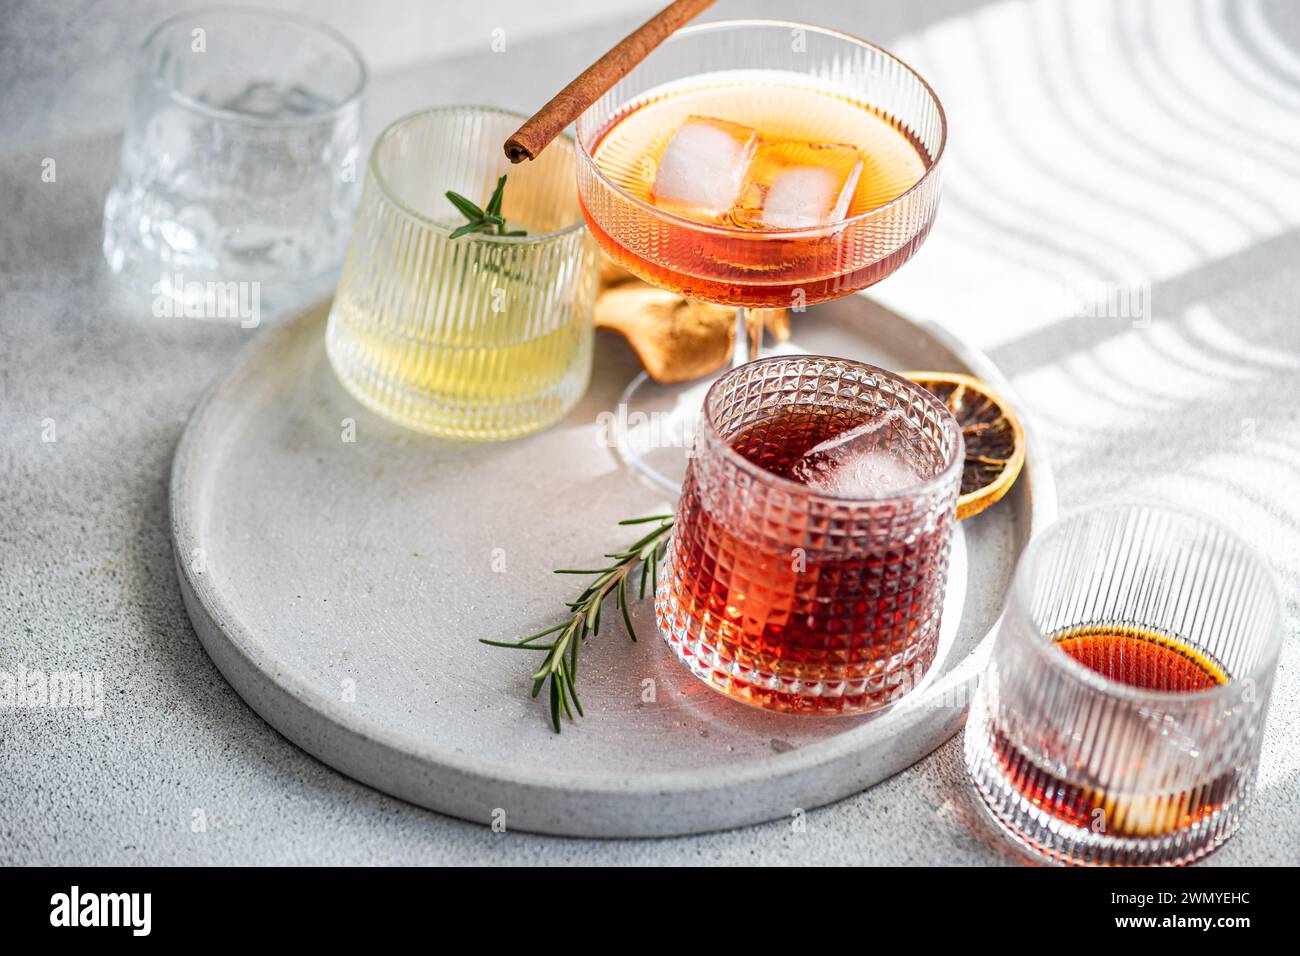 Un'elegante selezione di bevande alcoliche in vari bicchieri, accentuata da un bastoncino di cannella, rosmarino e ghiaccio, adagiata su un vassoio rotondo in cemento morbido Foto Stock